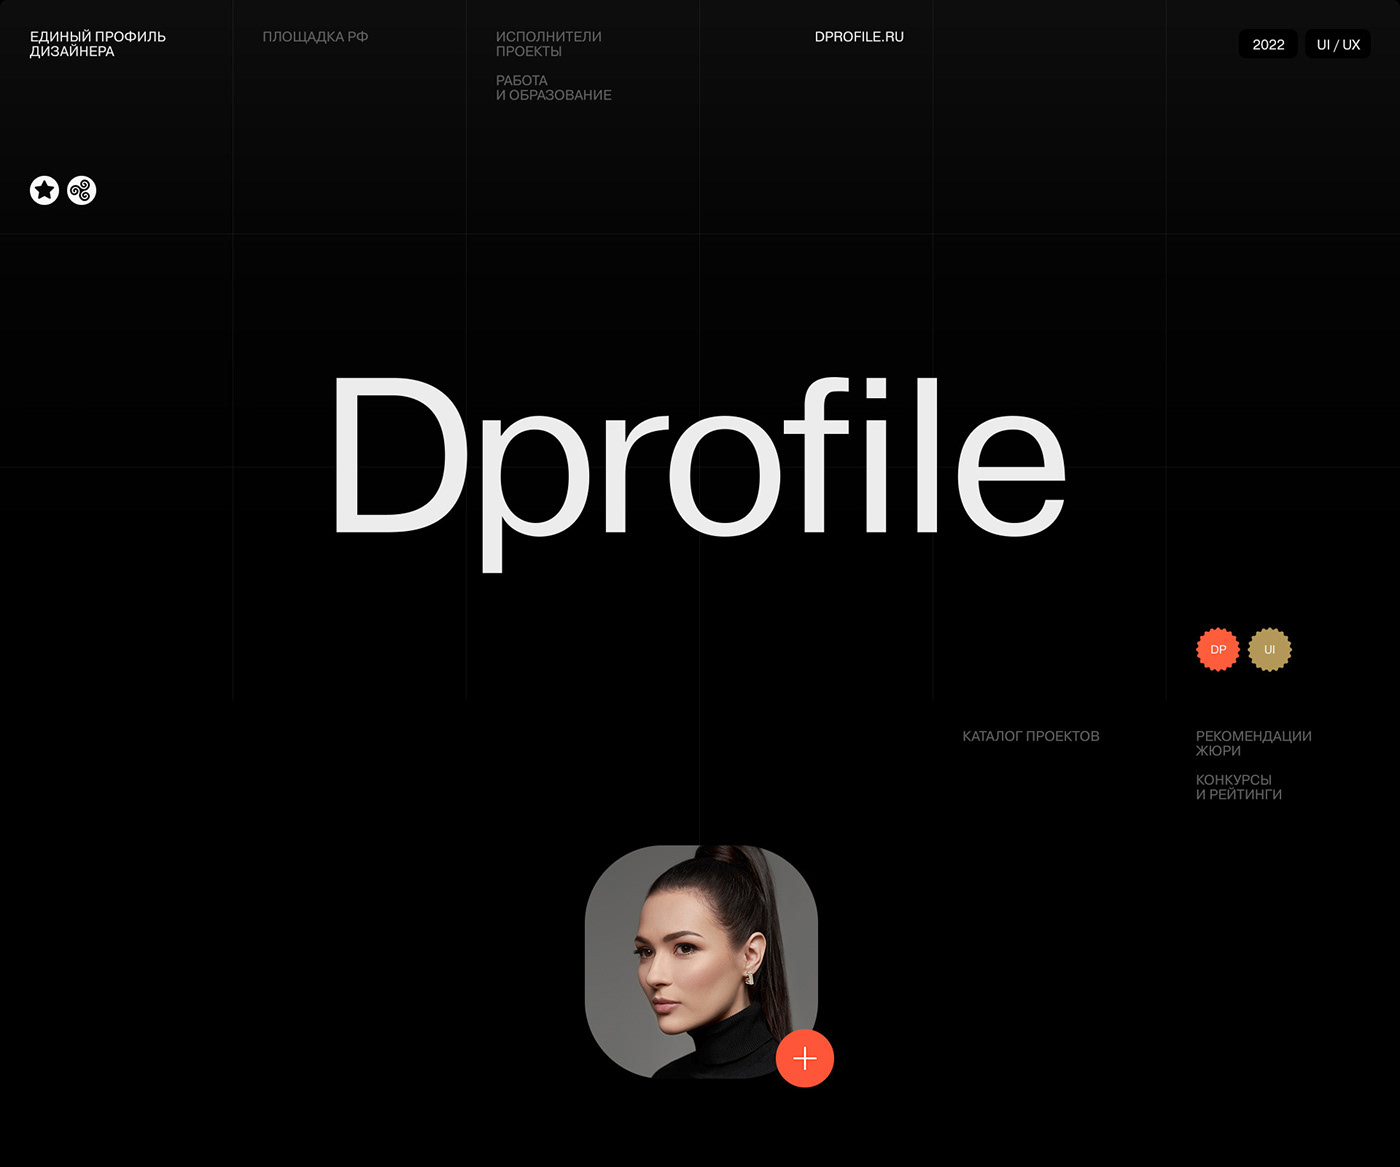 business designer dprofile laguta market network Platform social Startup wemakefab